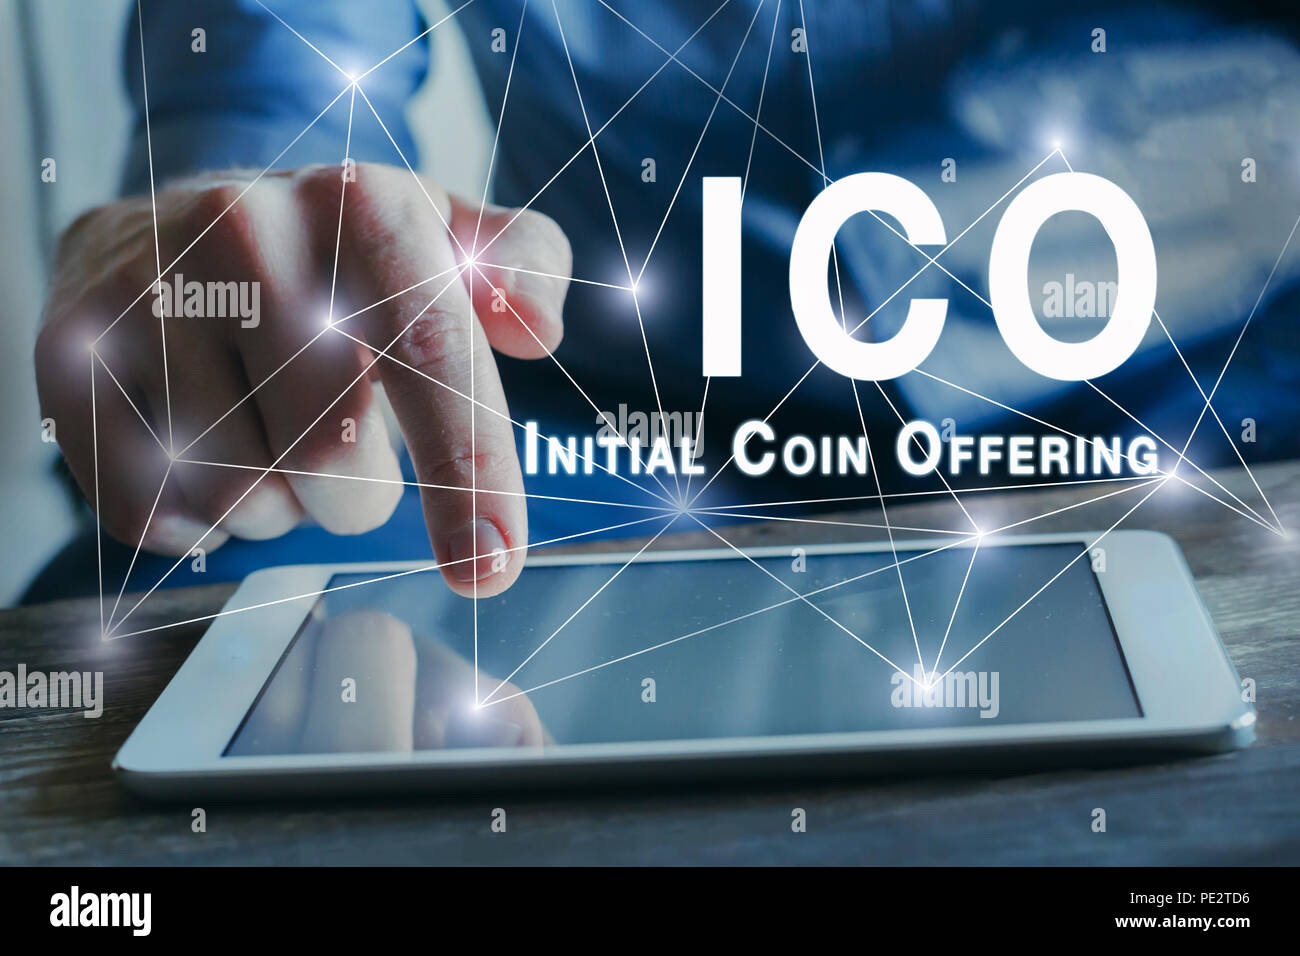 Concetto di ICO, iniziale offerta di moneta, denaro digitale valuta crypto Foto Stock